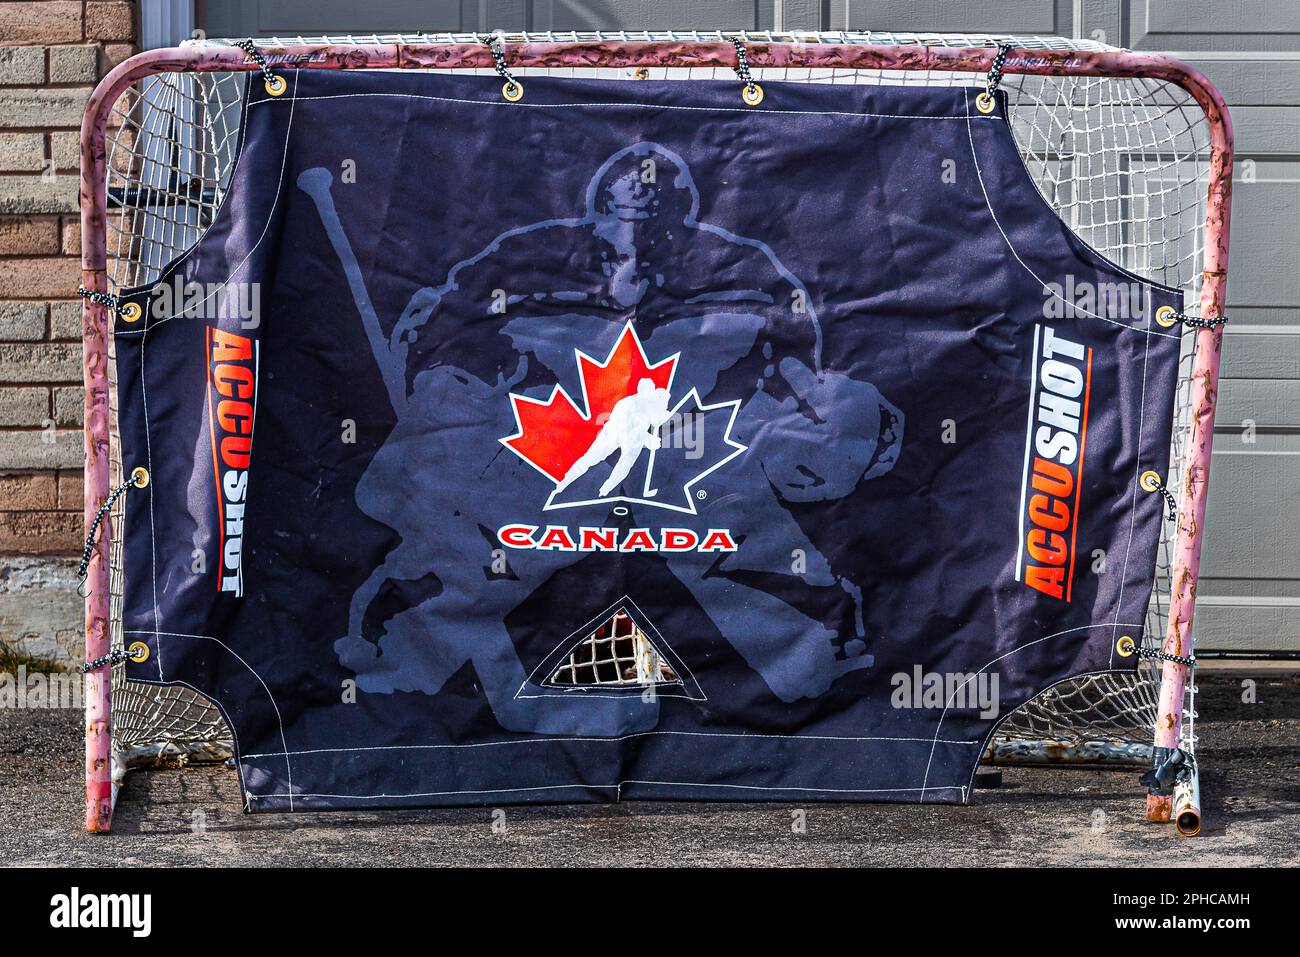 Hockey-Tor. Viele Viertel in kanadischen Städten, ein häufiger Anblick von Hockeyspielen im Hinterhof. Hockey ist hier ein übliches Bild. Kanadischer Sport. Stockfoto